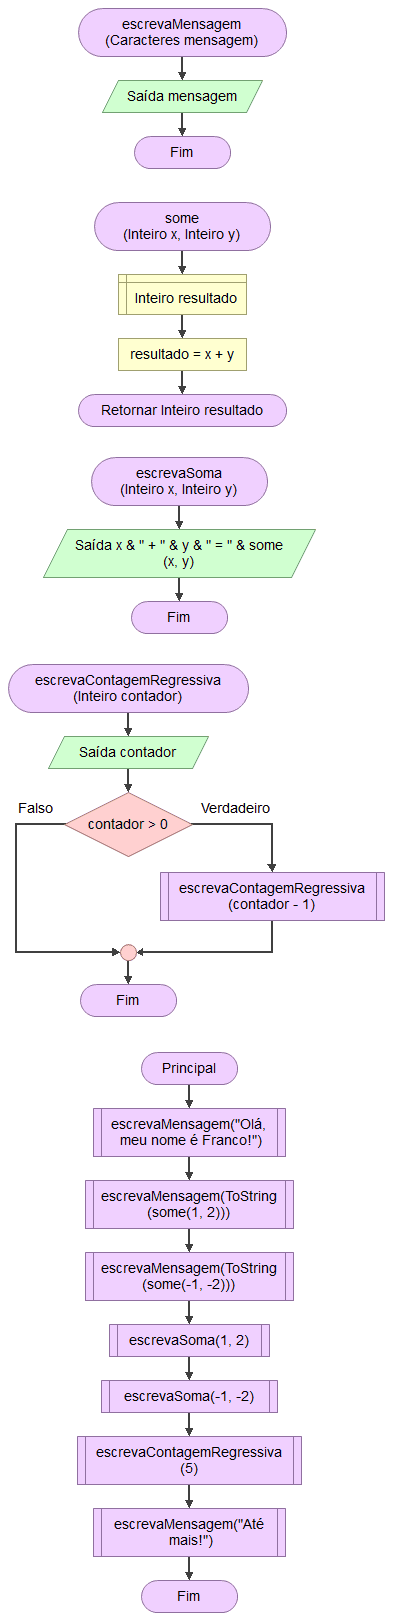 Exemplo uso de subrotinas em Flowgorithm com interface em Português.